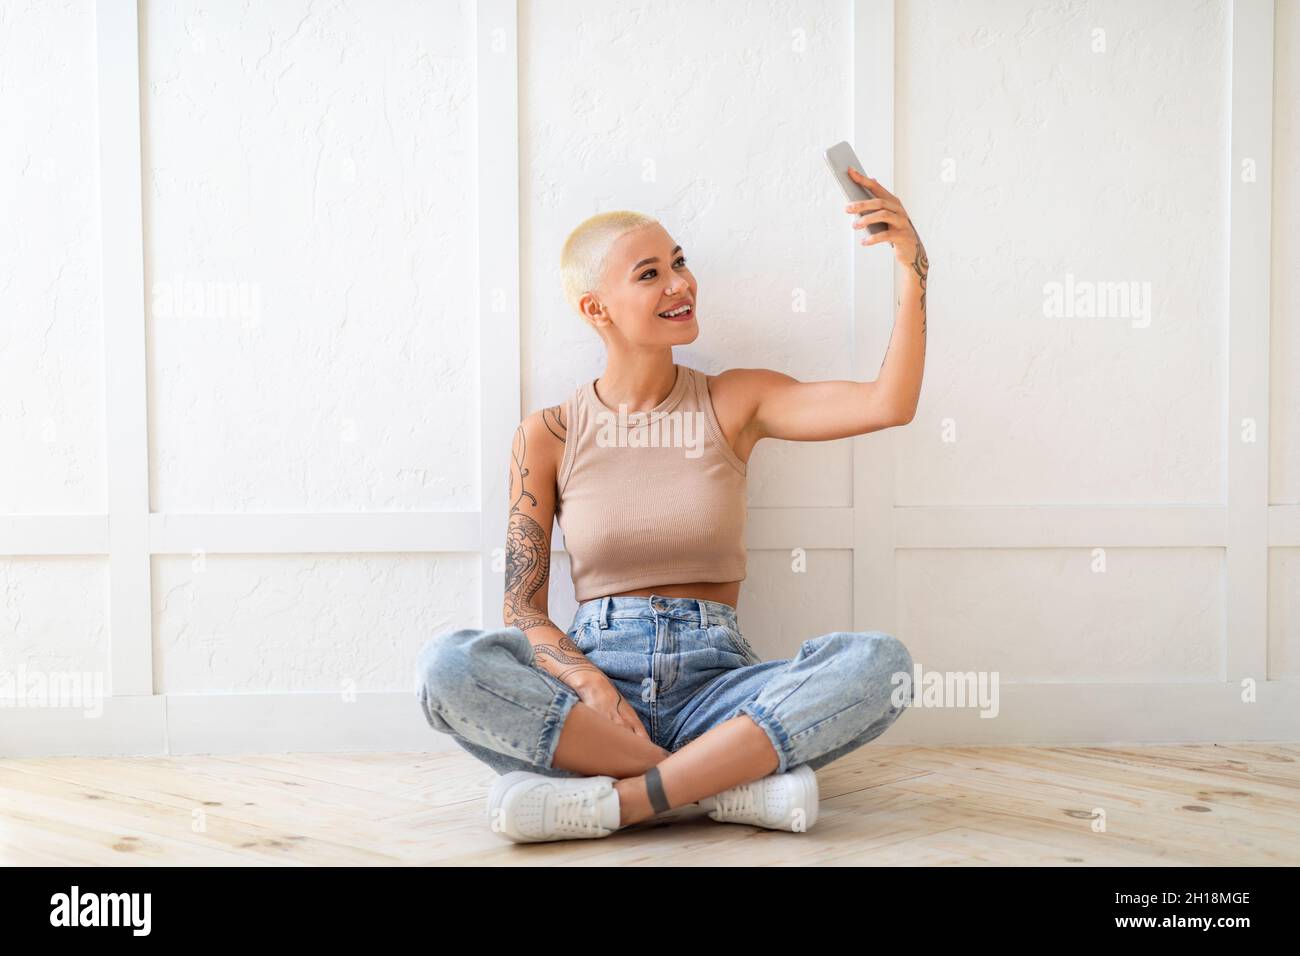 Giovane donna elegante che porta selfie su smartphone per social media o amici, seduto sul pavimento sopra una parete bianca Foto Stock